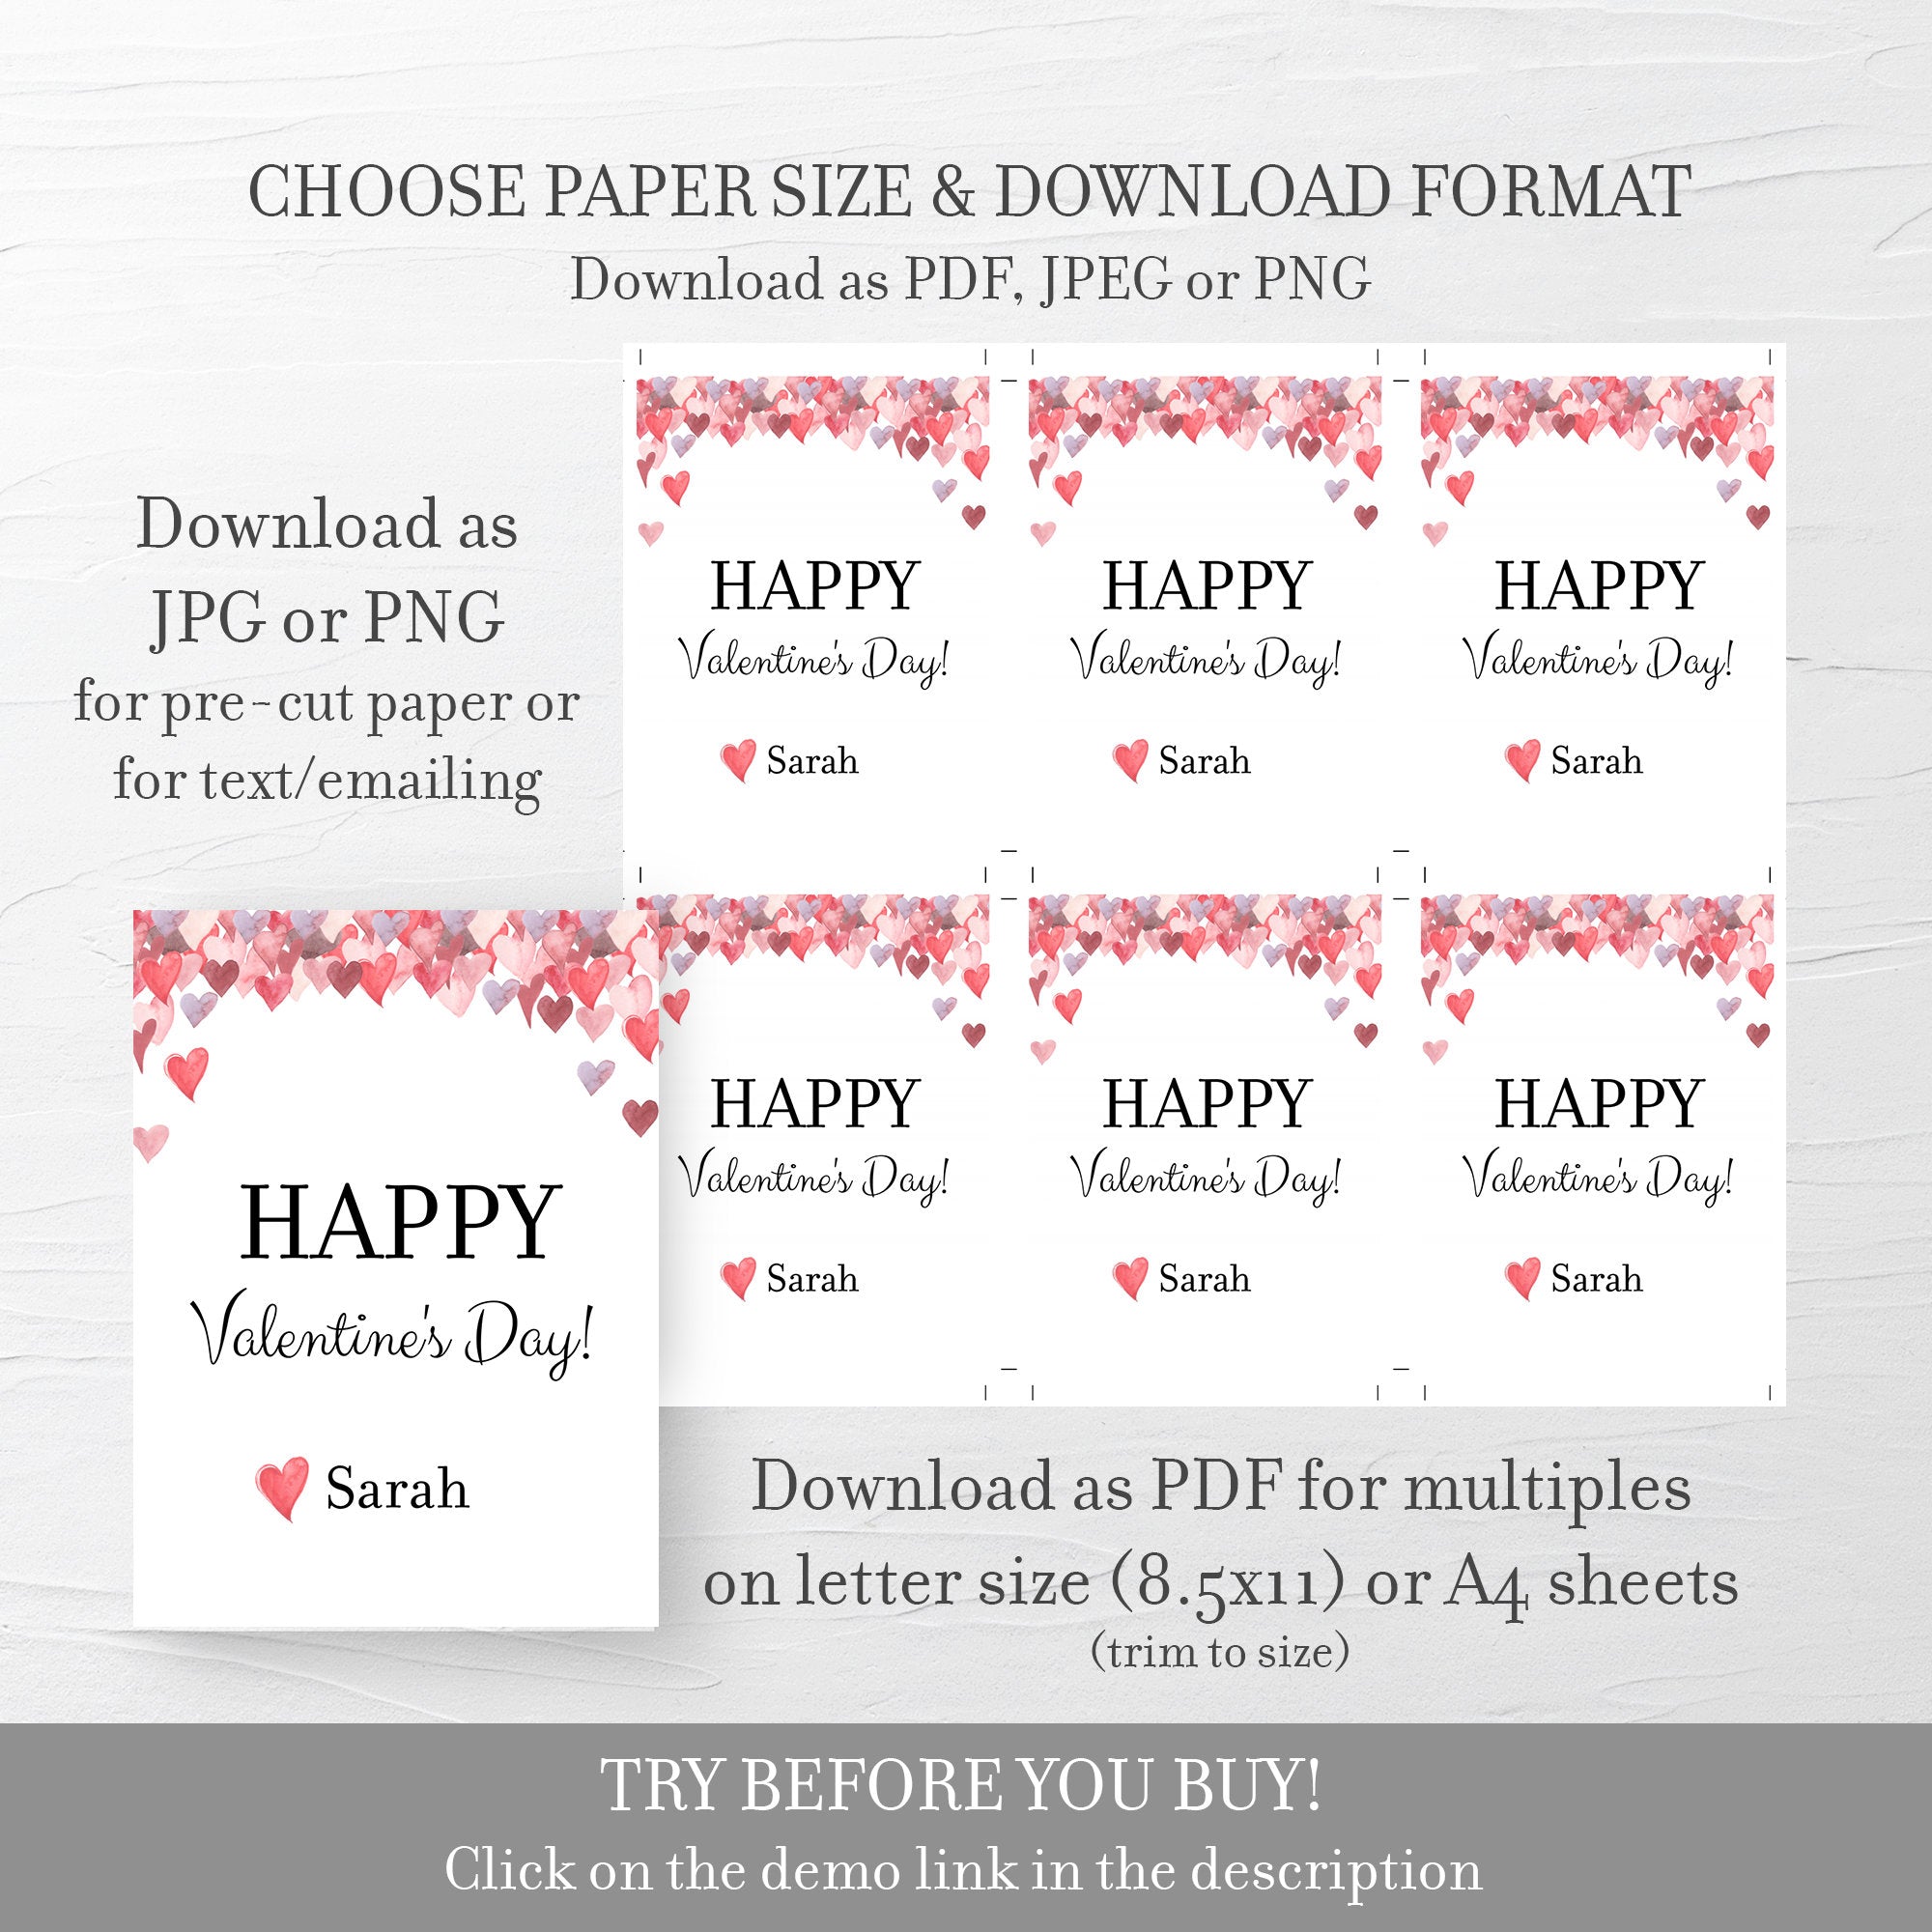 Printable Valentine Cards For Kids, Personalized Valentine Day Card Printable Template, DIY Valentines Day Card, DIGITAL DOWNLOAD V100